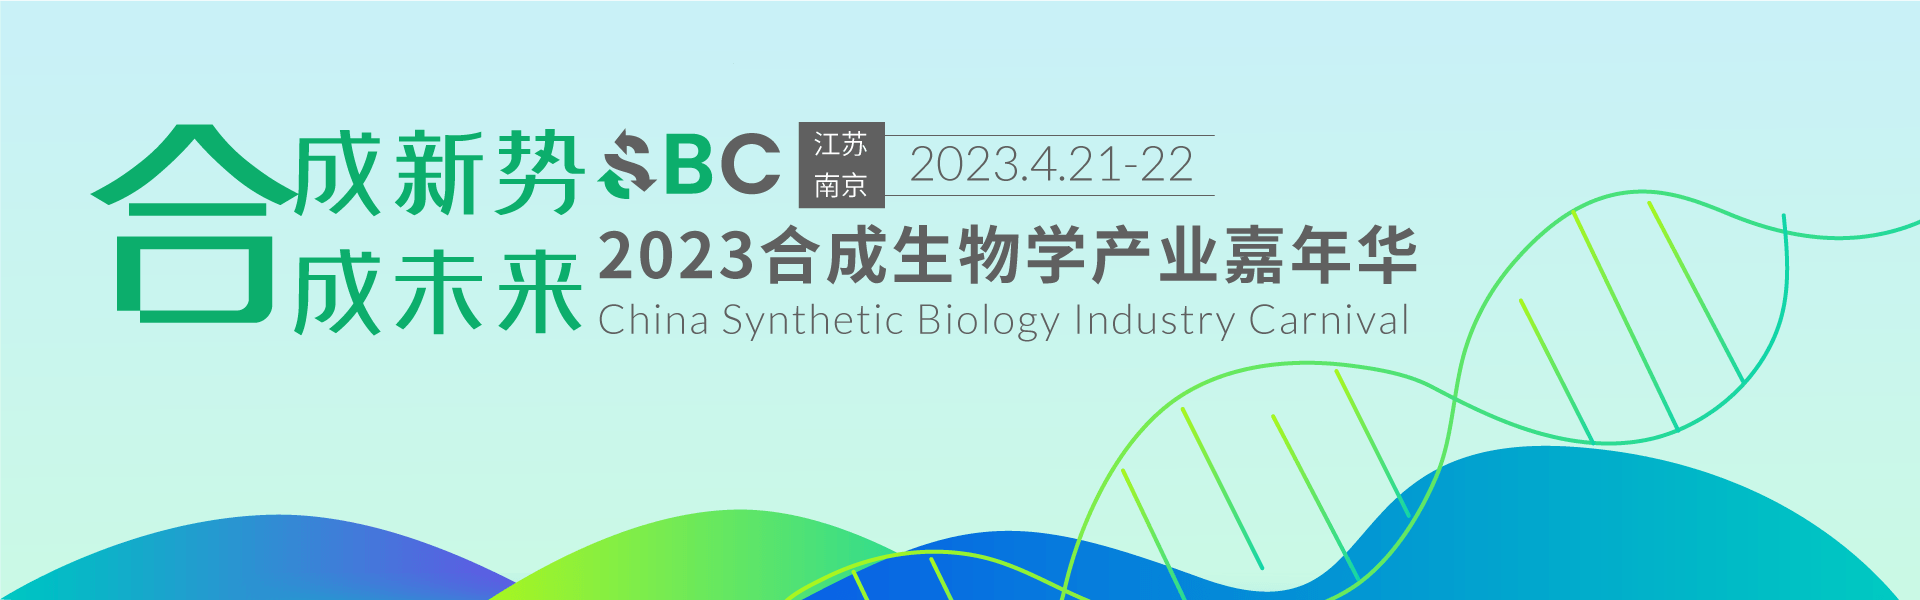 2023合成生物學產業嘉年華 SBC2023